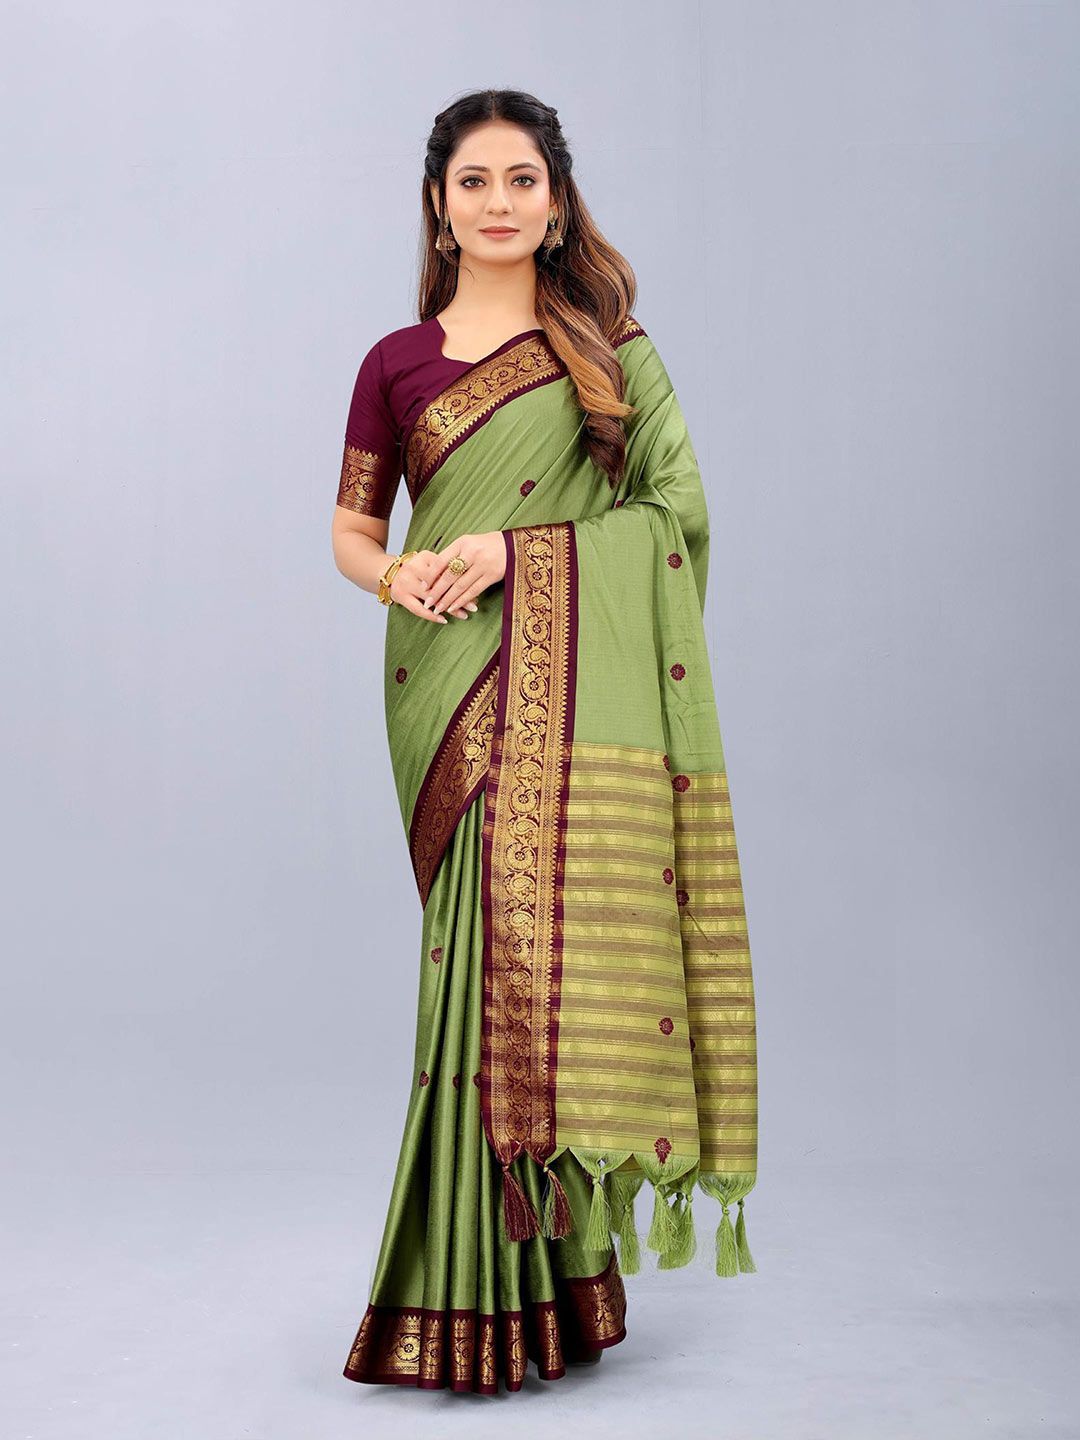 Paramparik Textile Ethnic Motifs Zari Pure Silk Dharmavaram Saree Price in India